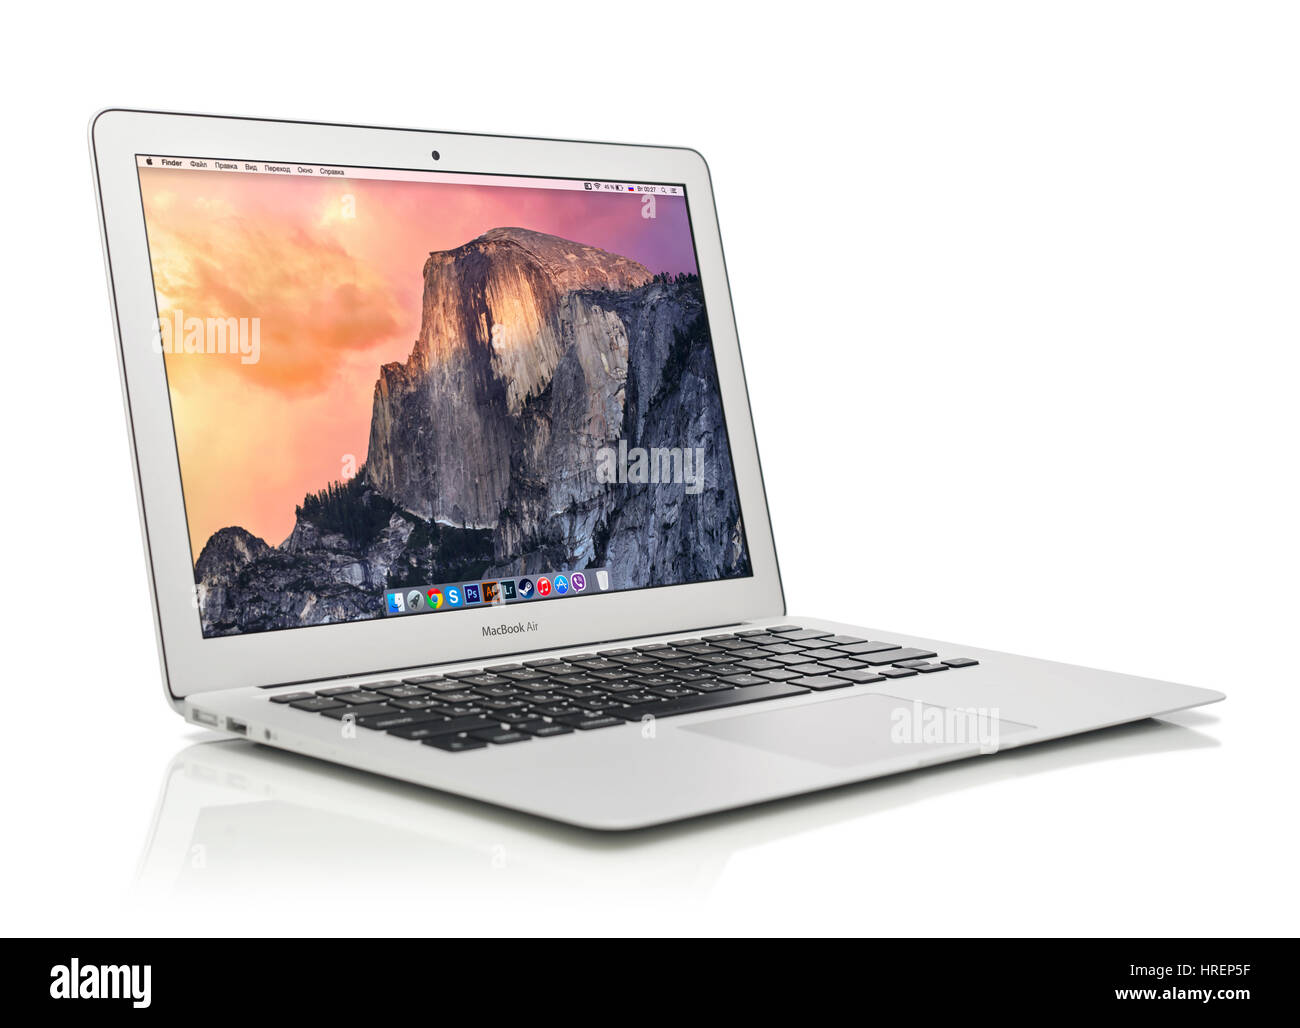 KIEV, UKRAINE - le 29 janvier 2015 : tout nouveau MacBook Air d'Apple début  2014 avec home page à l'écran, conçu et développé par Apple Inc Photo Stock  - Alamy